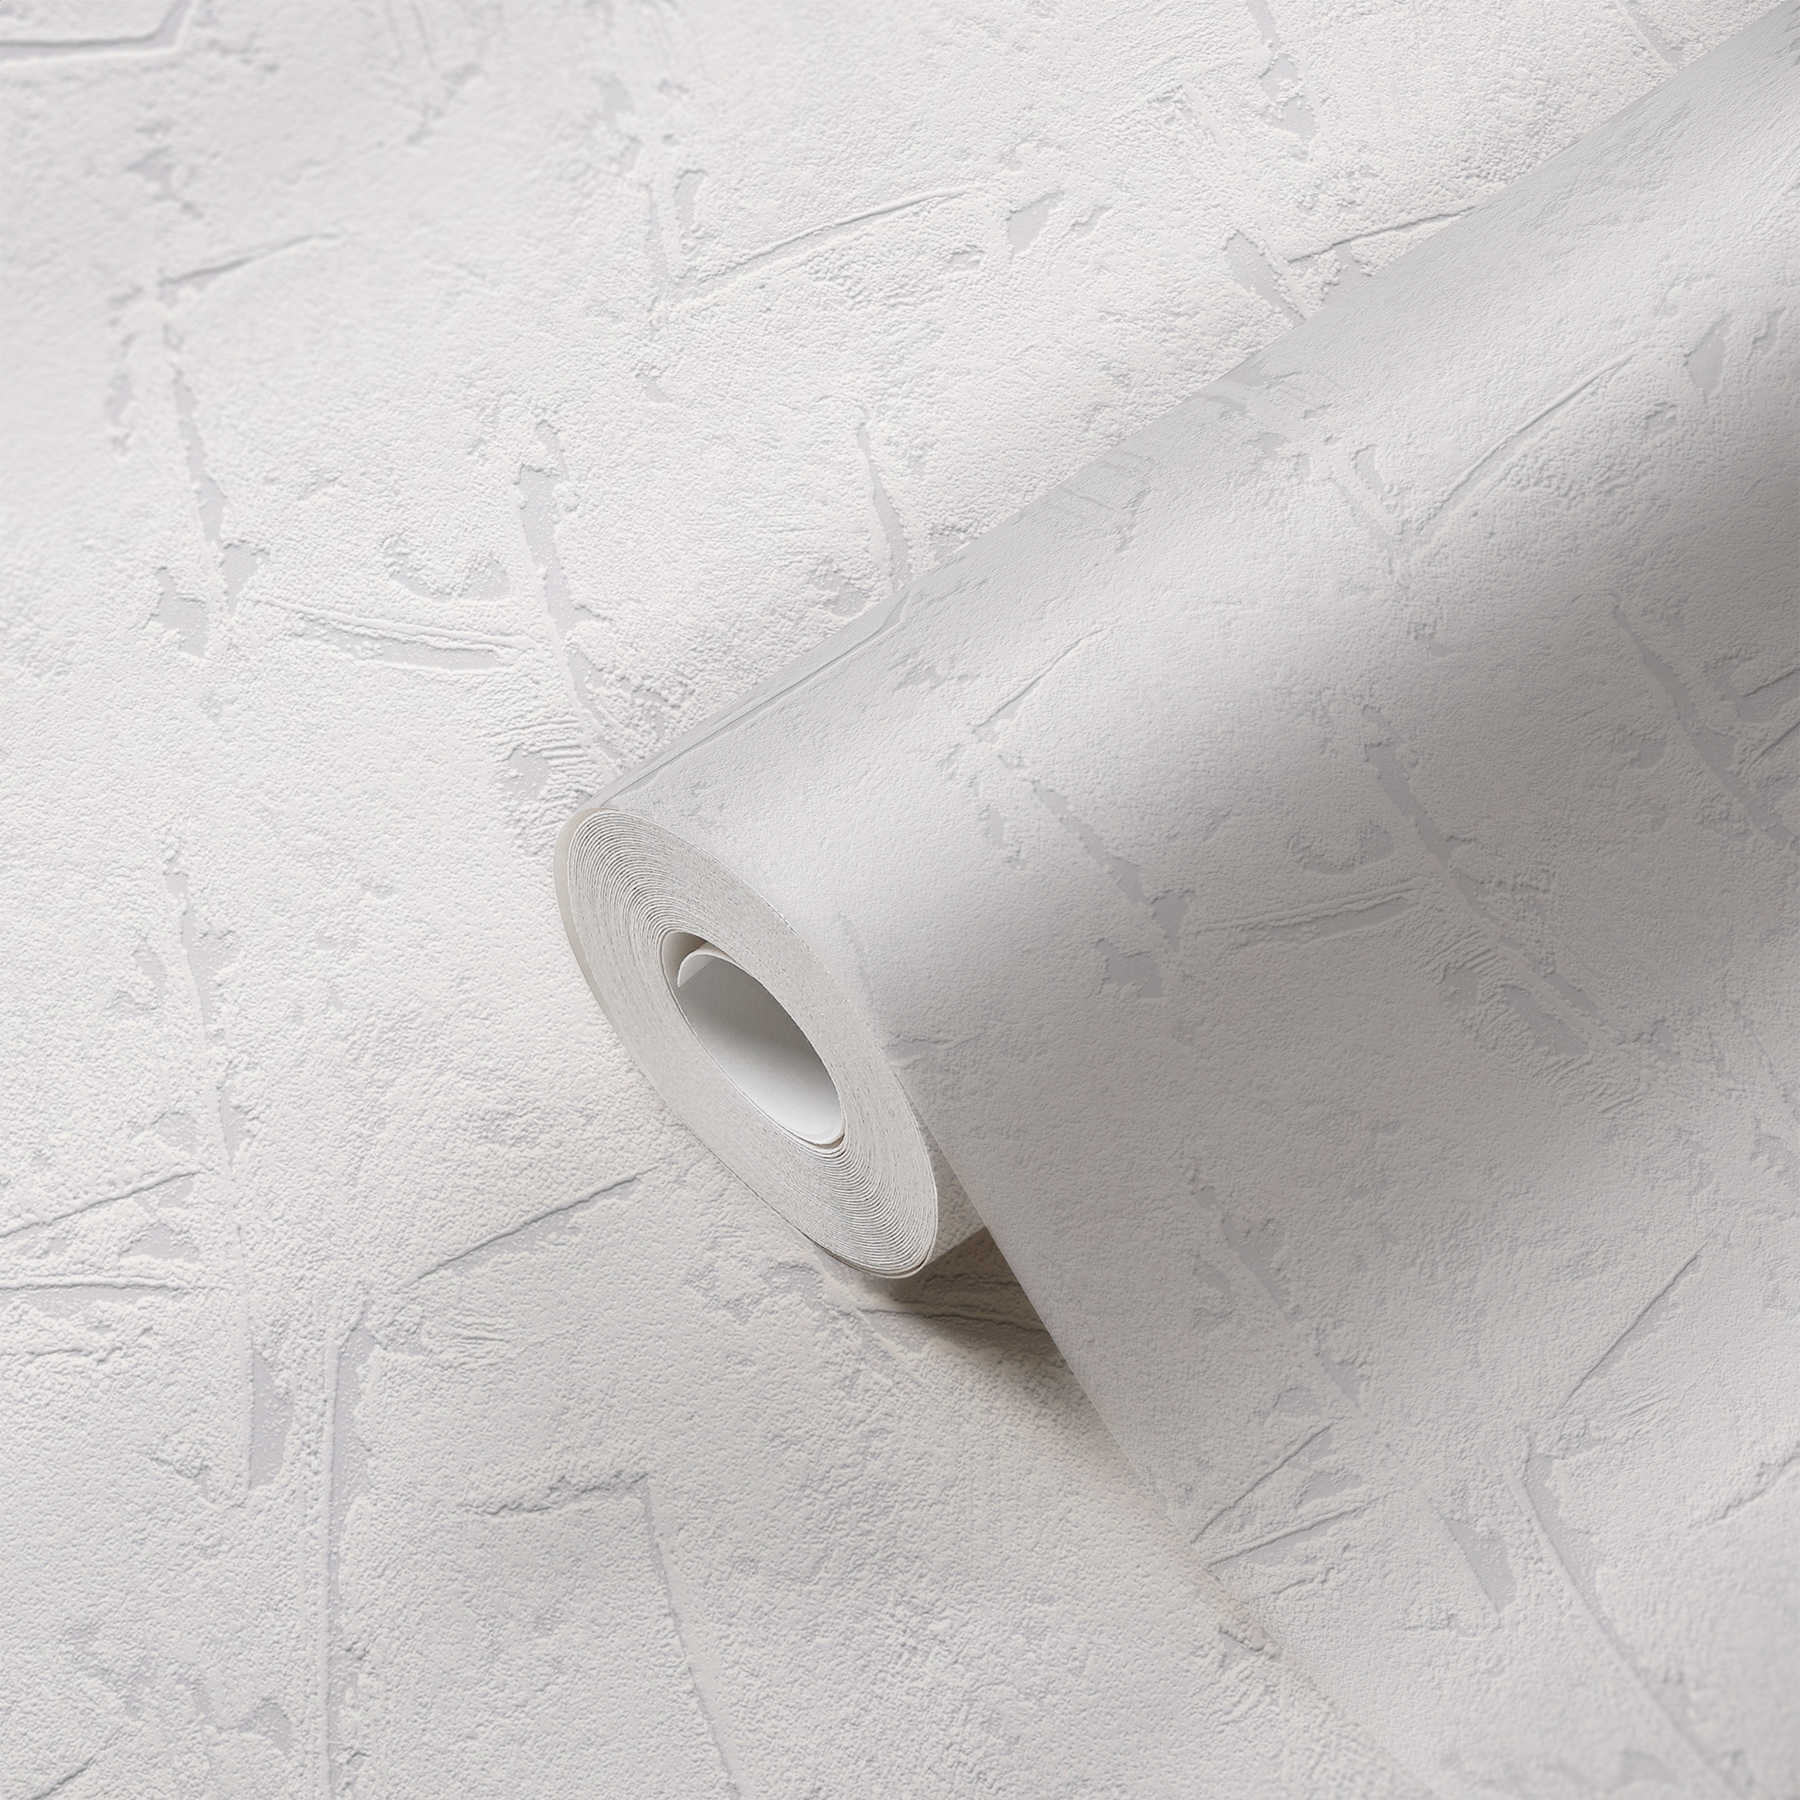             Papel pintado blanco gris con superficie de yeso y efecto 3D - Gris, Blanco
        